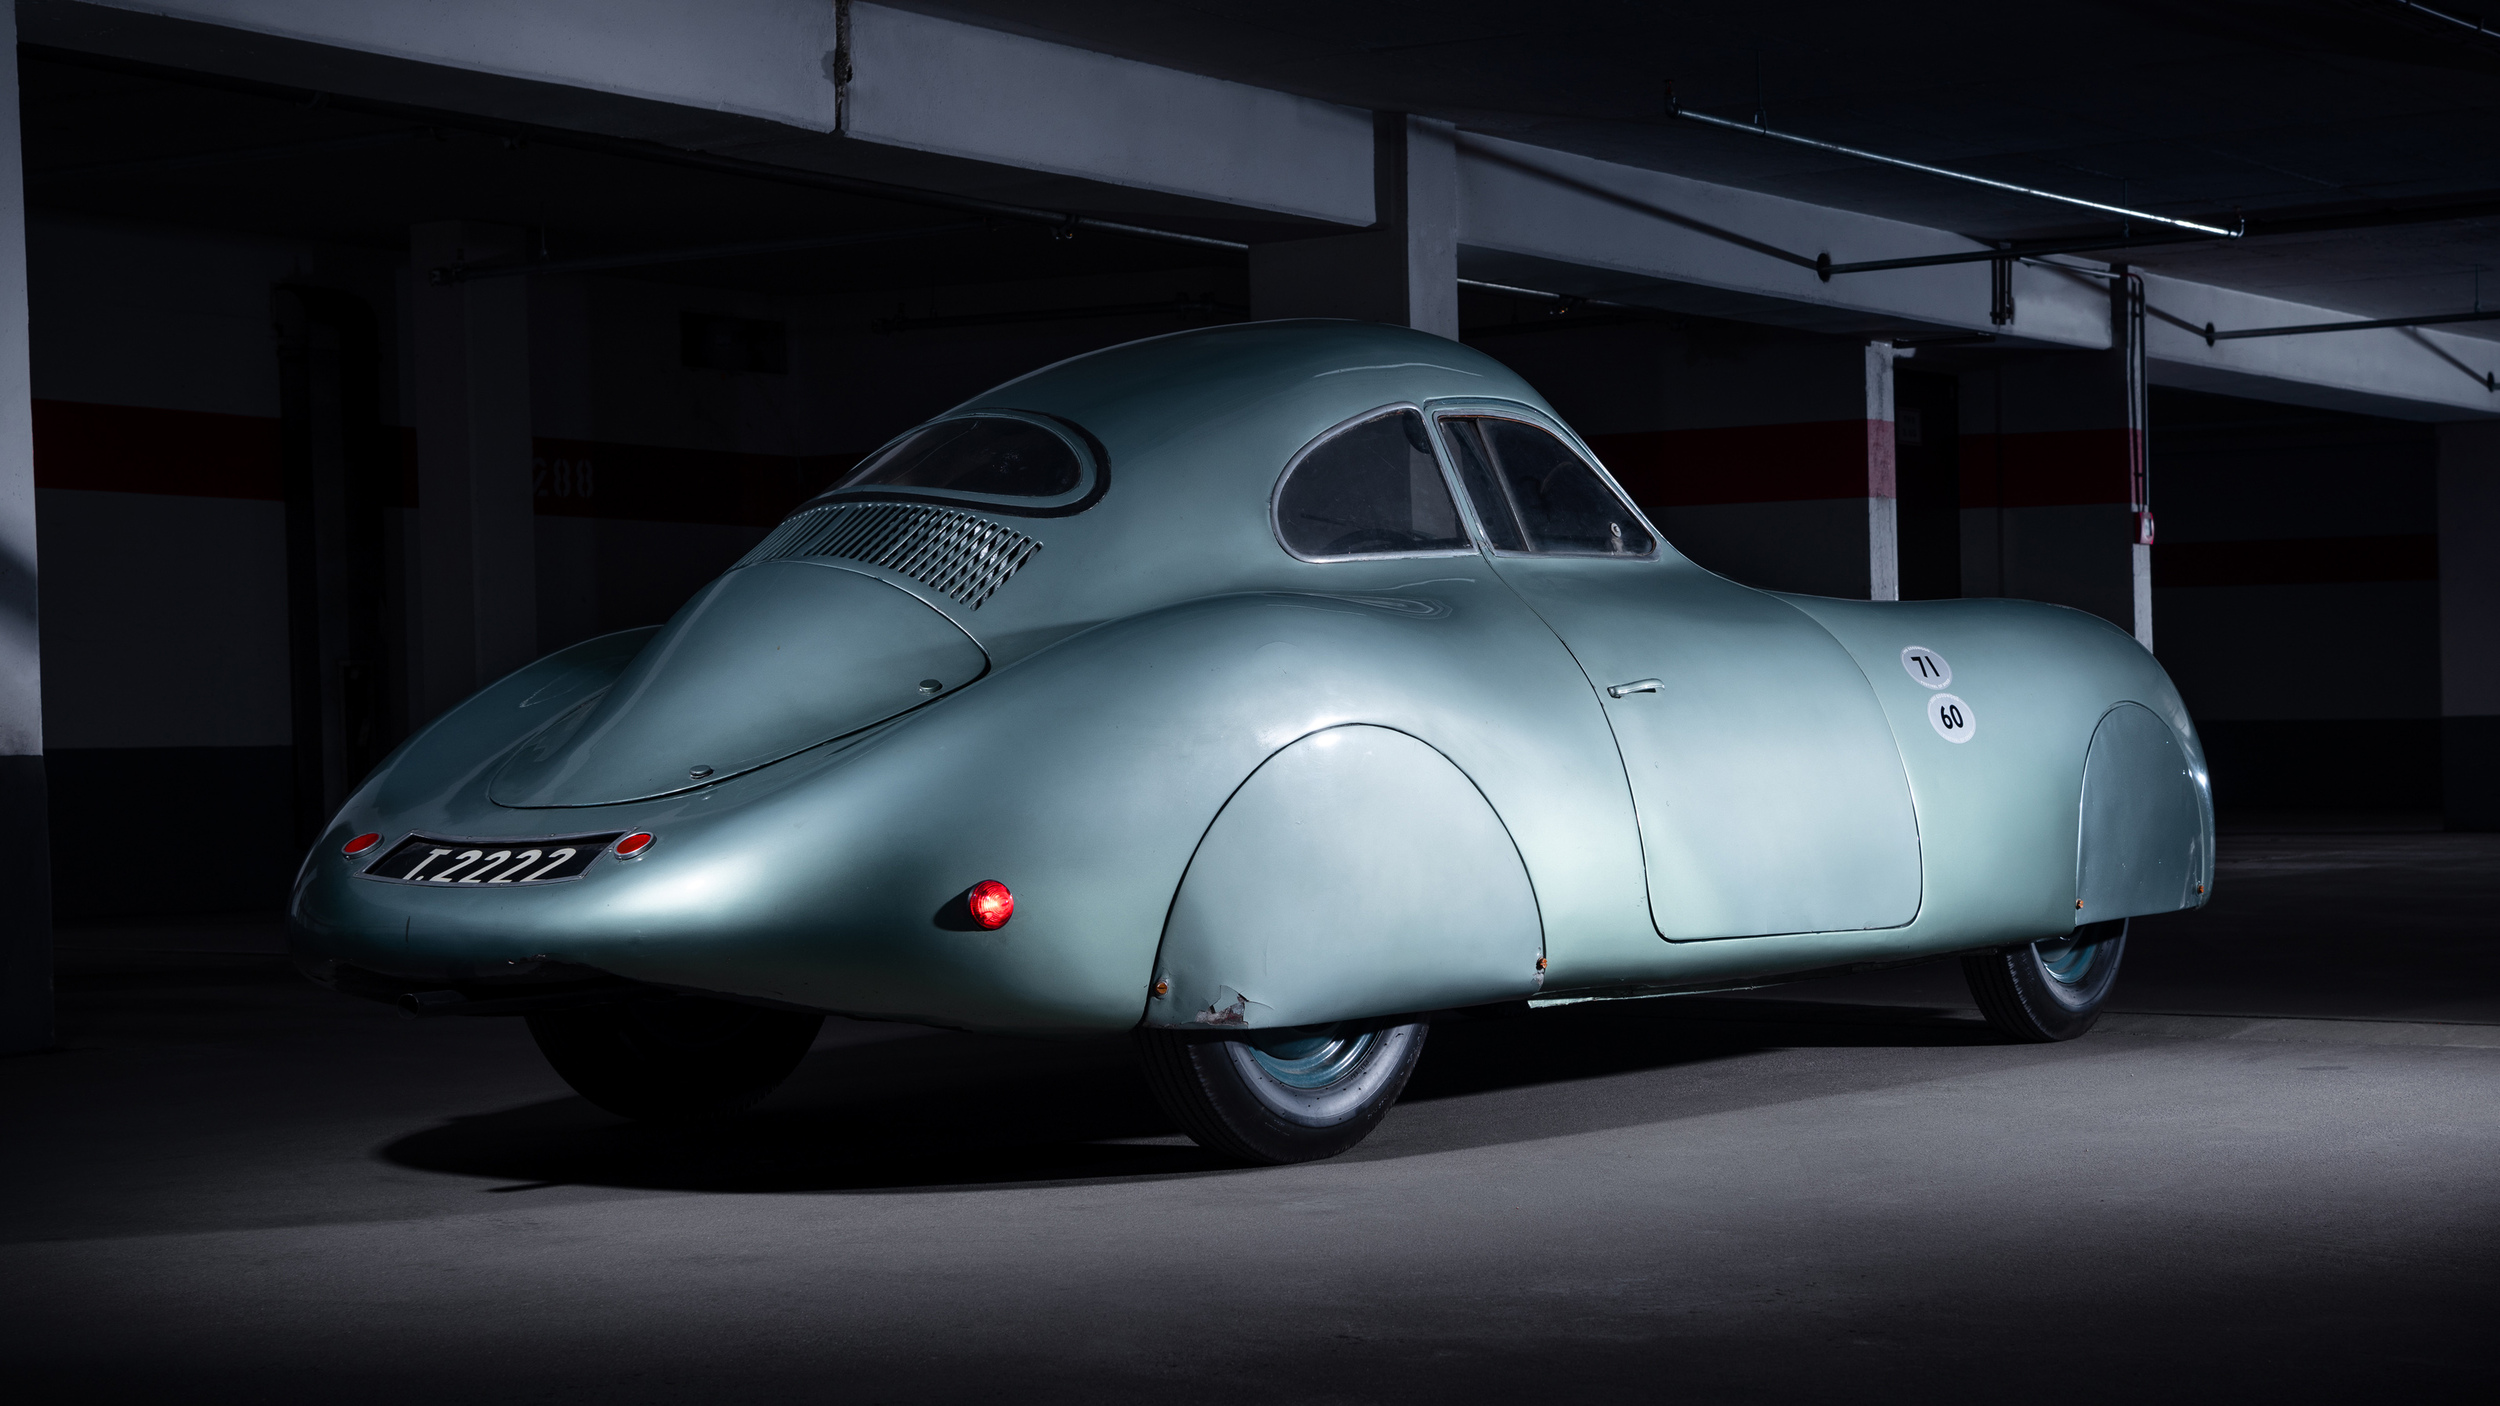 Porsche do pré-guerra, Type 64 é mais antigo que a própria fábrica alemã e tem o mesmo chassi que o primeiro Volkswagen Fusca.